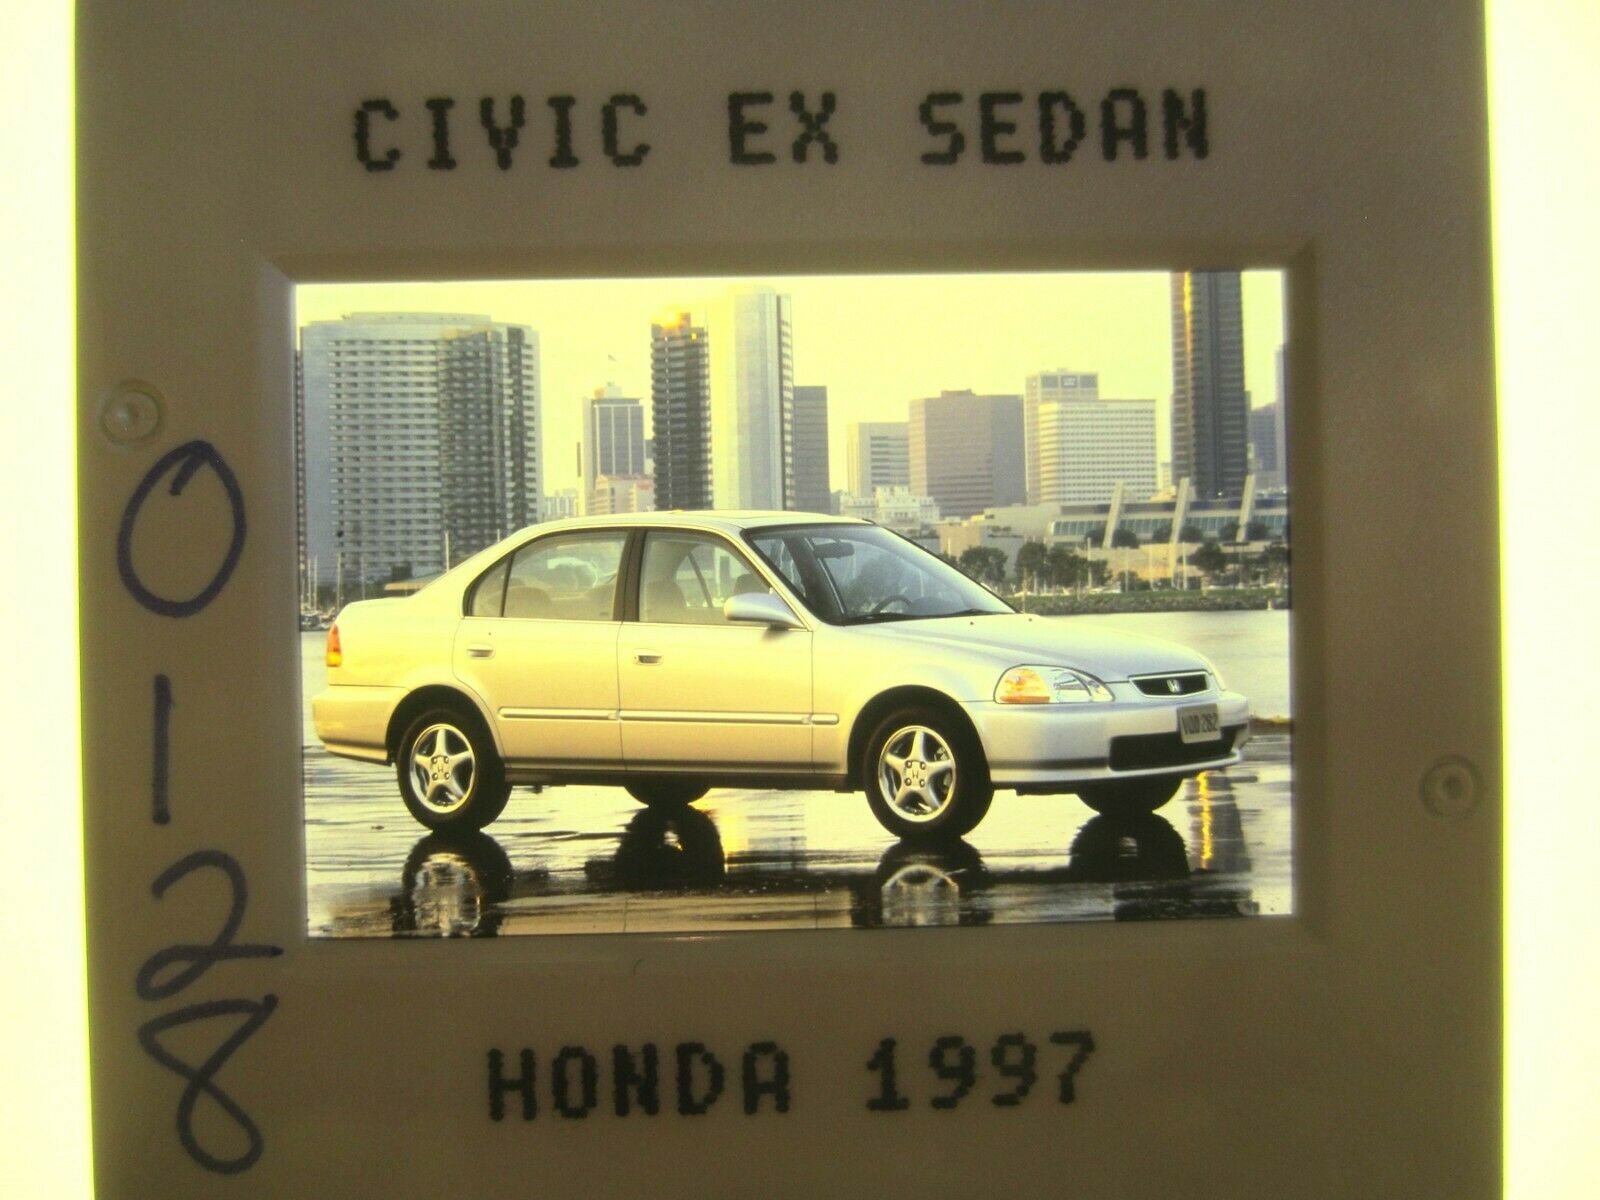 Honda Civic Ex Sedan Press Slide - 1997